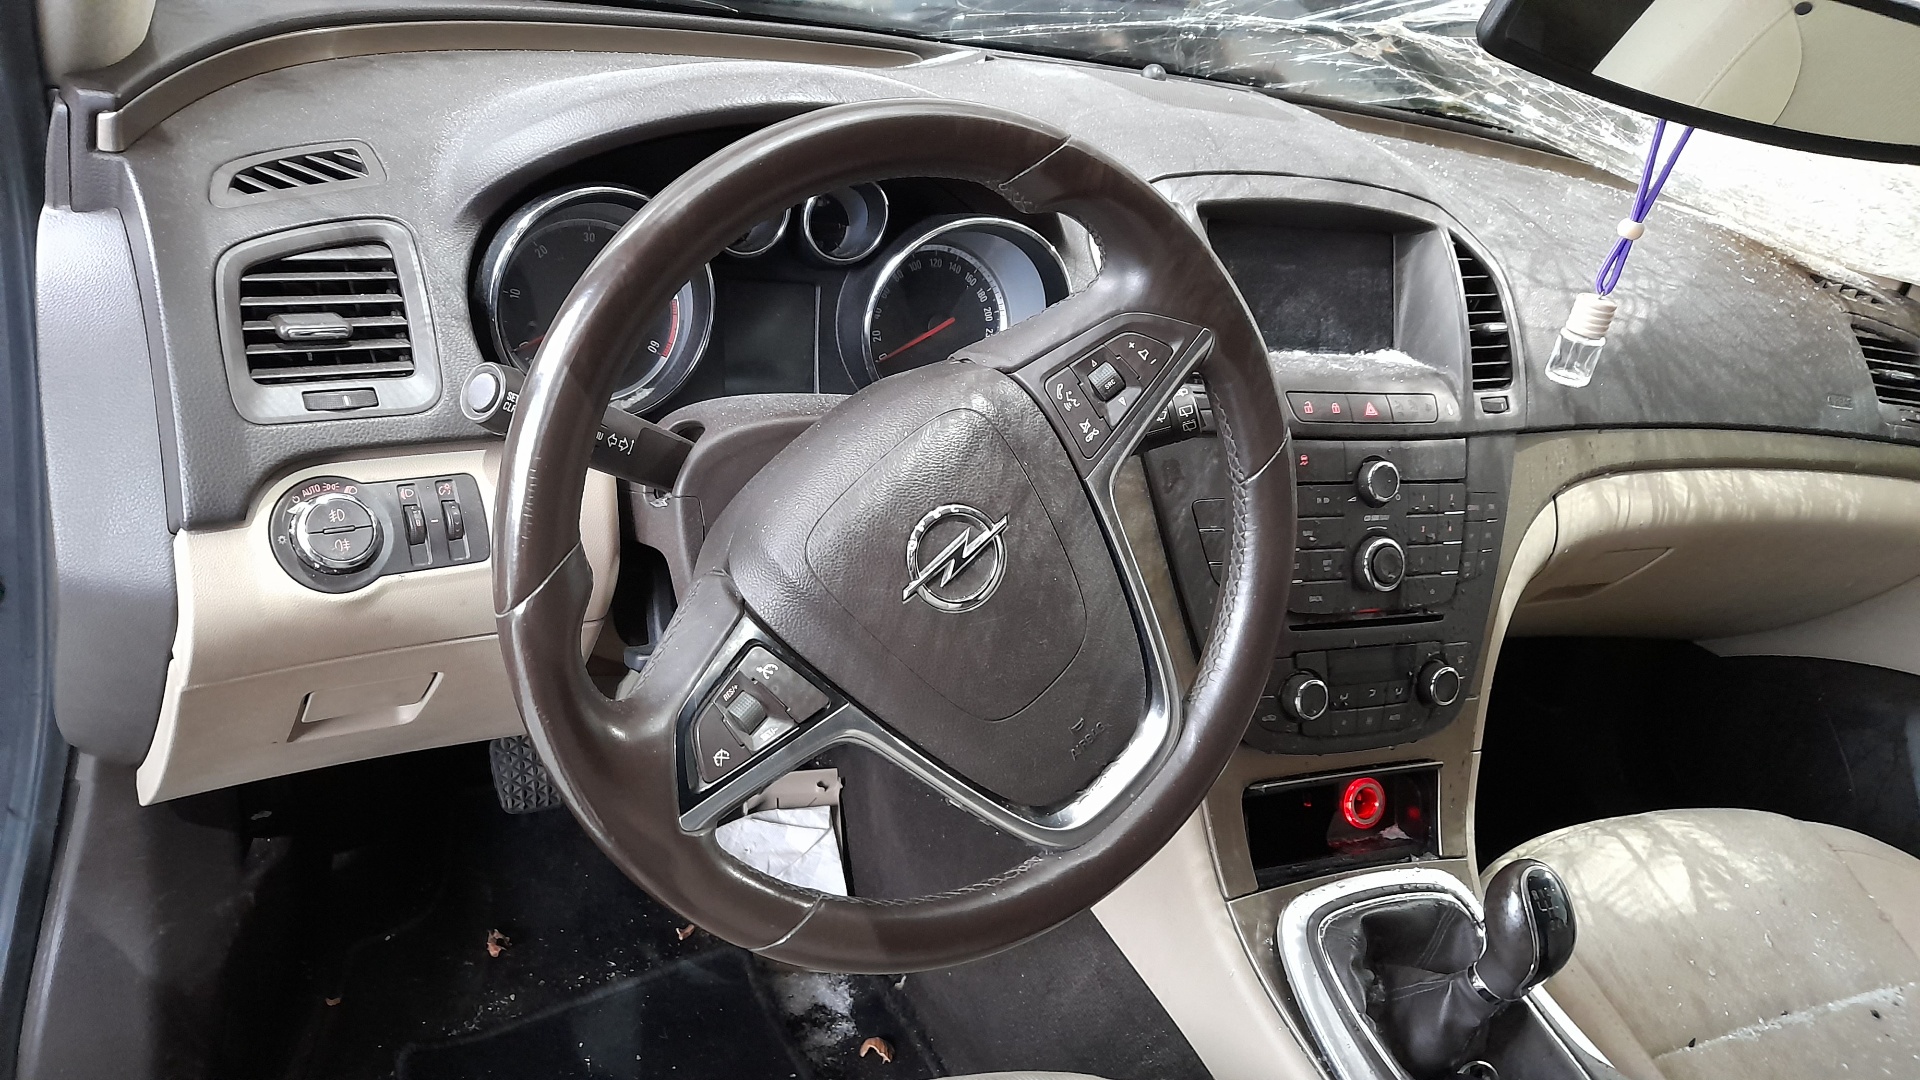 OPEL Insignia A (2008-2016) Steering Wheel 13316548 24114881